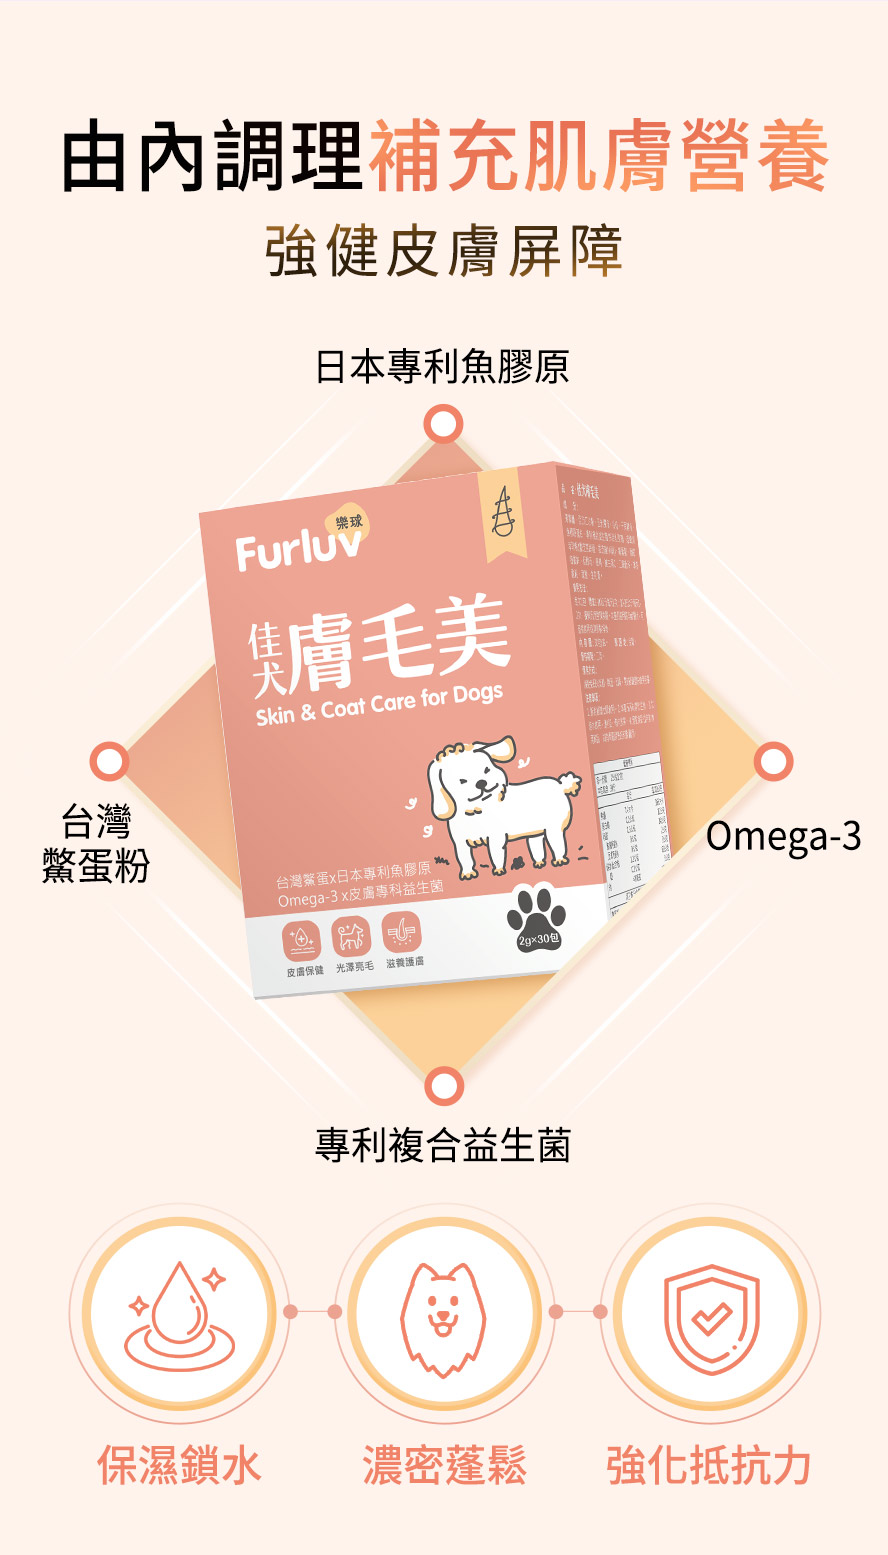 狗狗的肌膚營養補給：日本專利魚膠原蛋白、去殼鱉蛋粉、專利益生菌、Omega-3助肌膚鎖水、濃密爆毛。